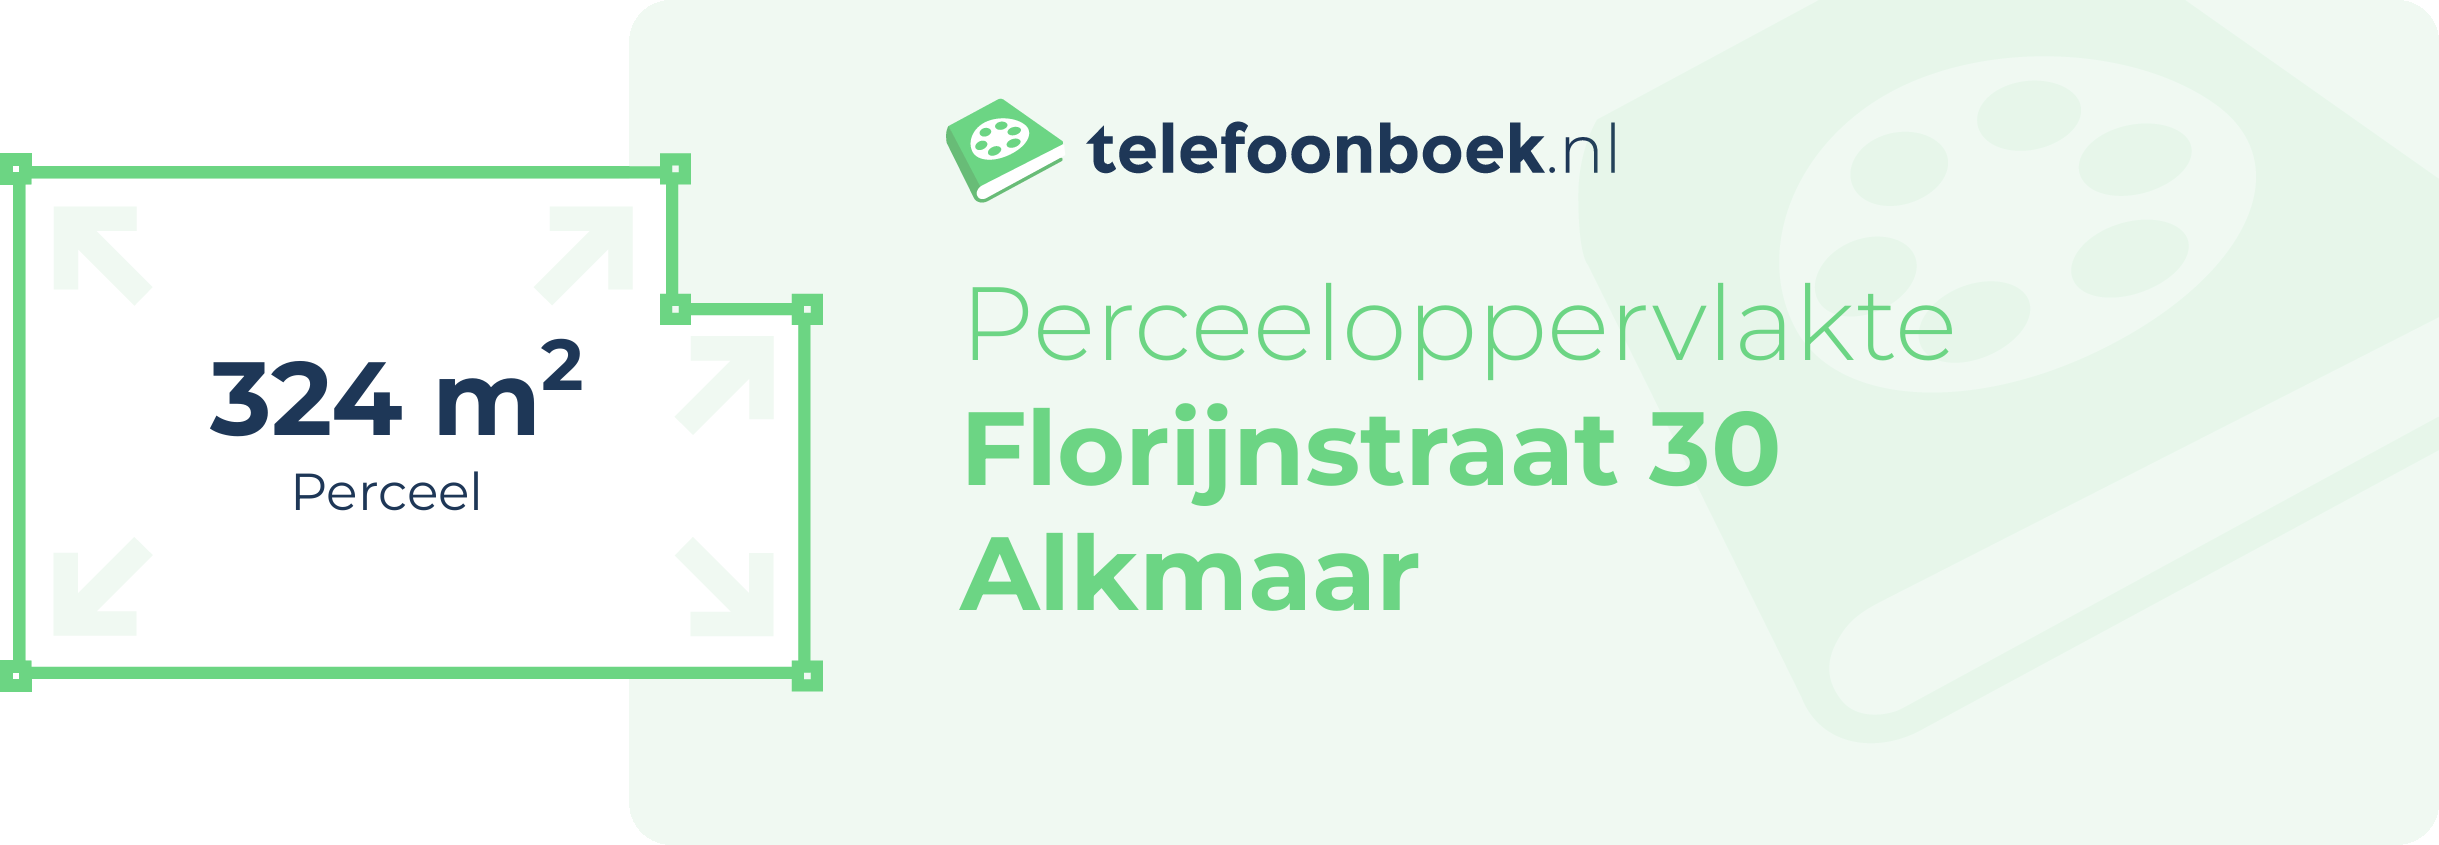 Perceeloppervlakte Florijnstraat 30 Alkmaar